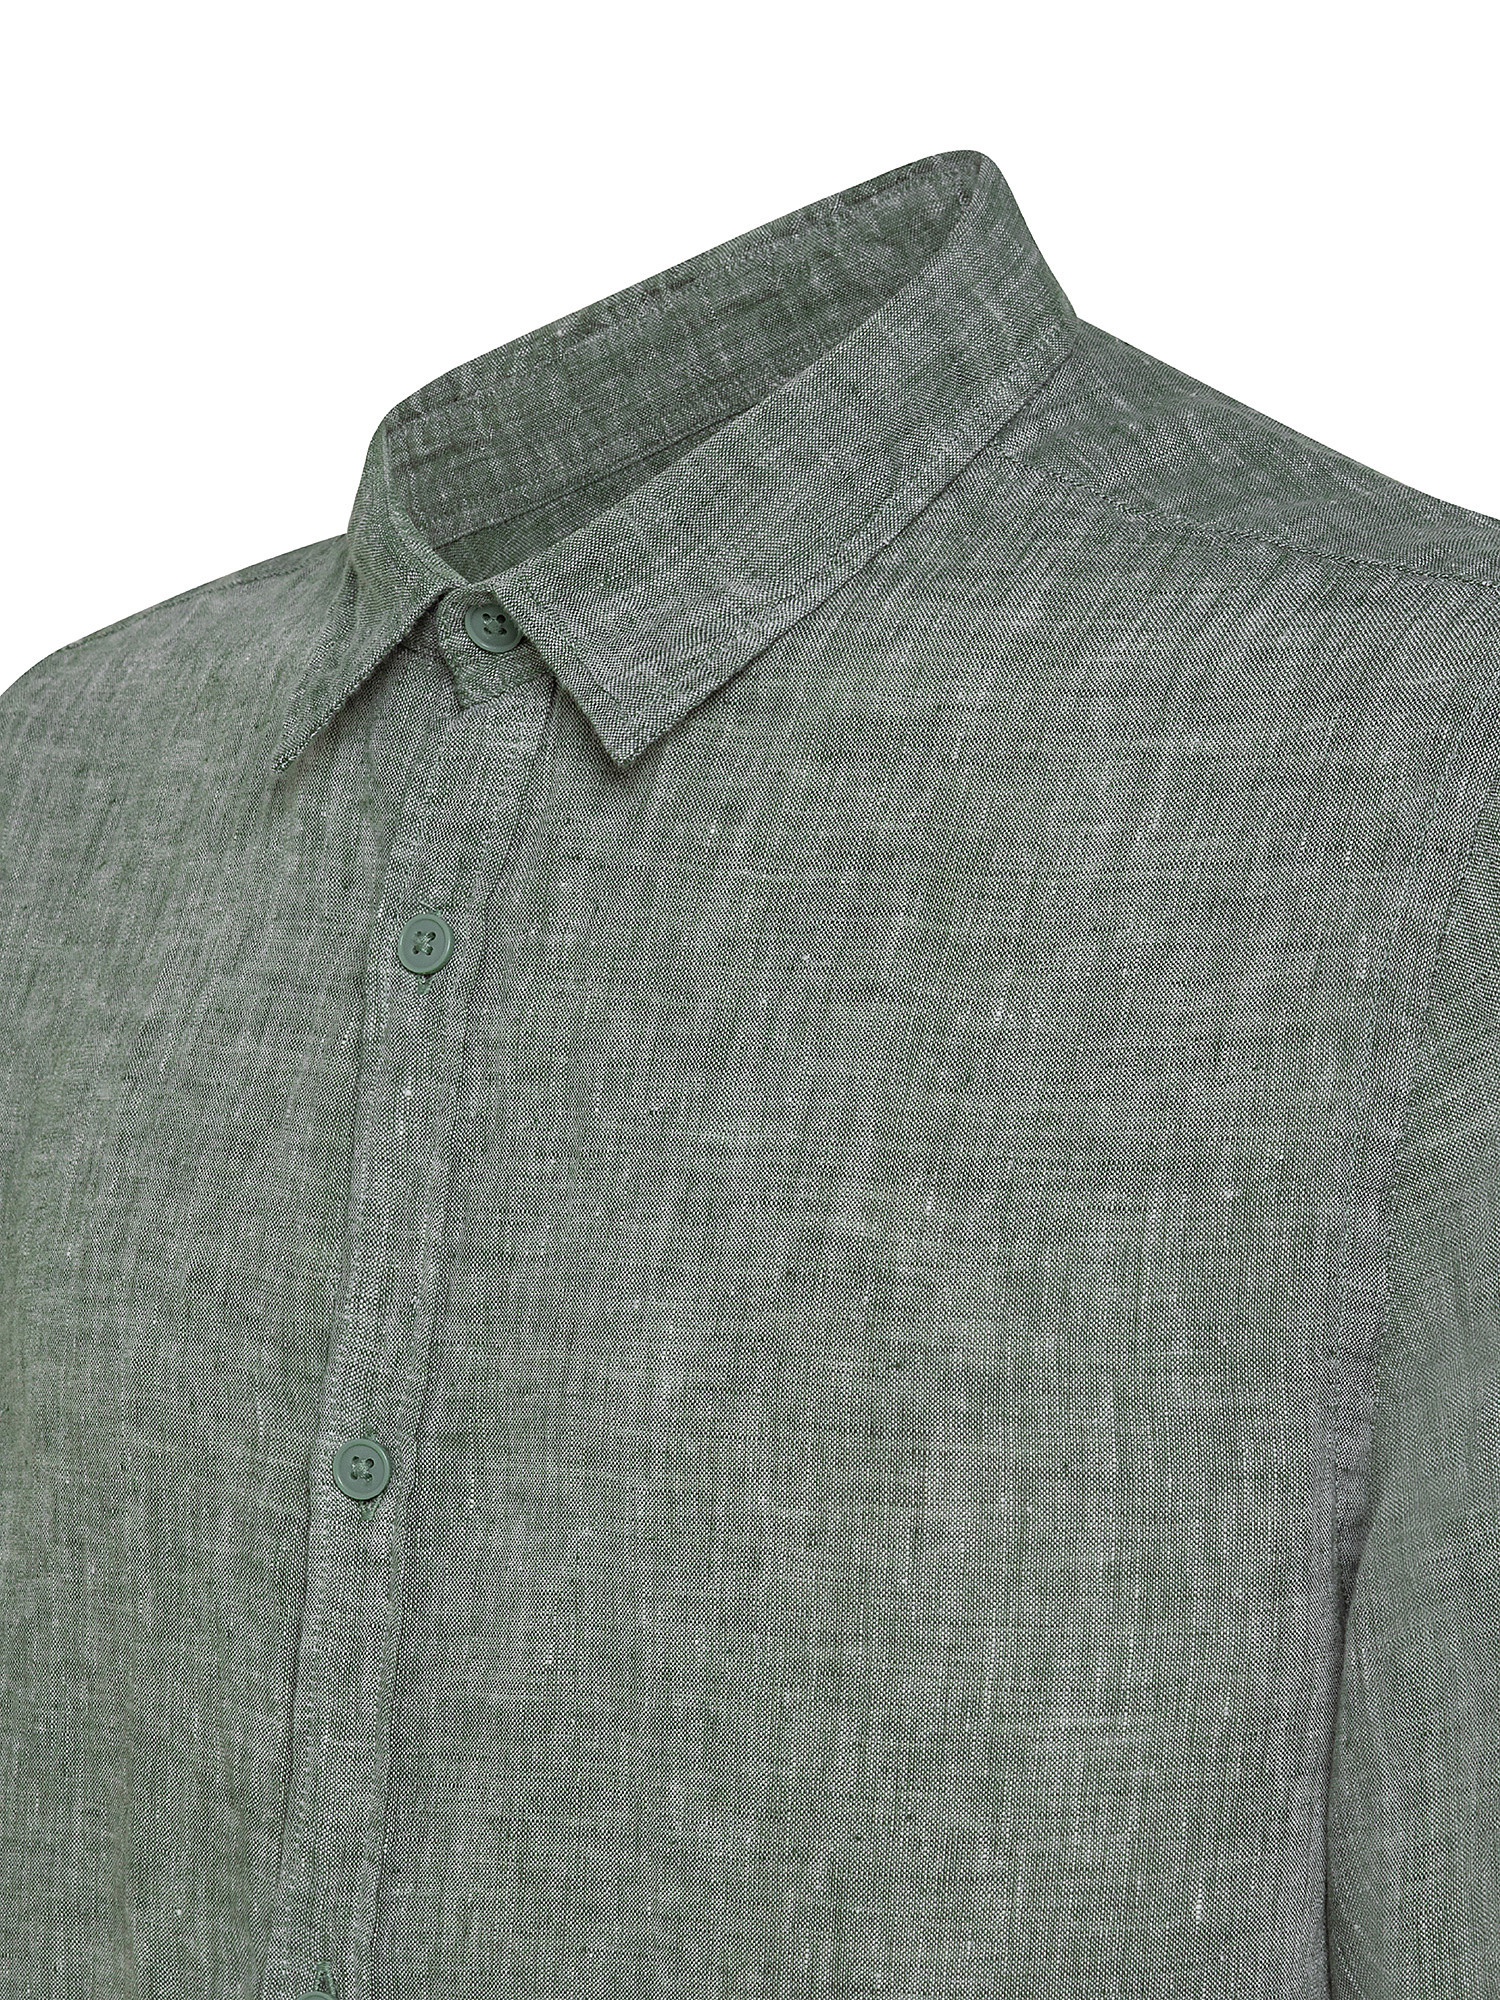 Camicia puro lino collo francese, Verde chiaro, large